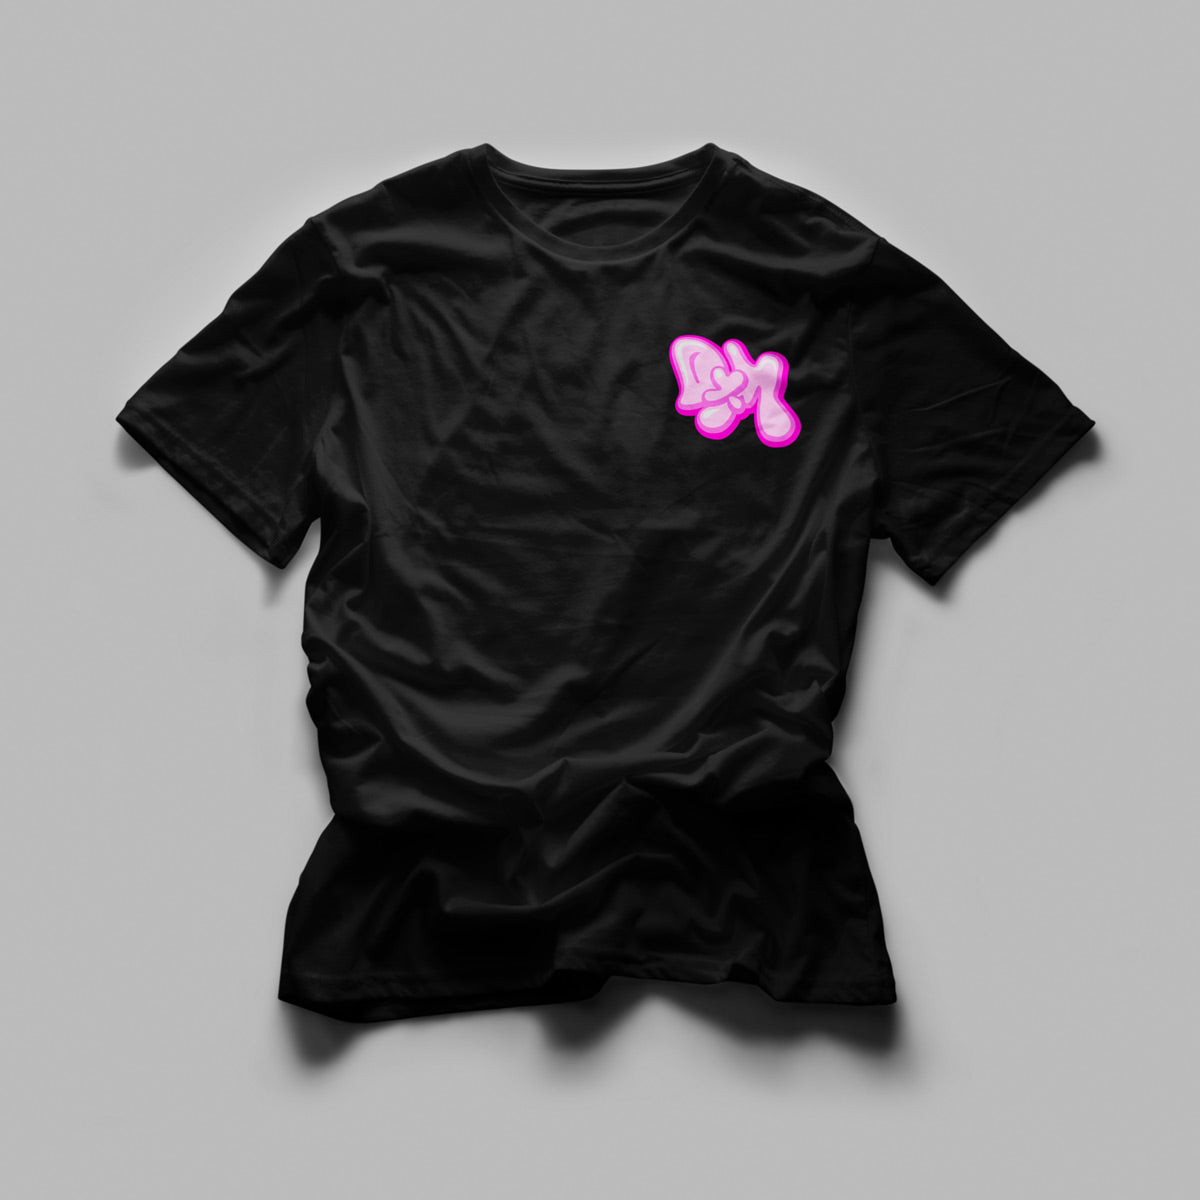 DxM - DM logo Tshirt